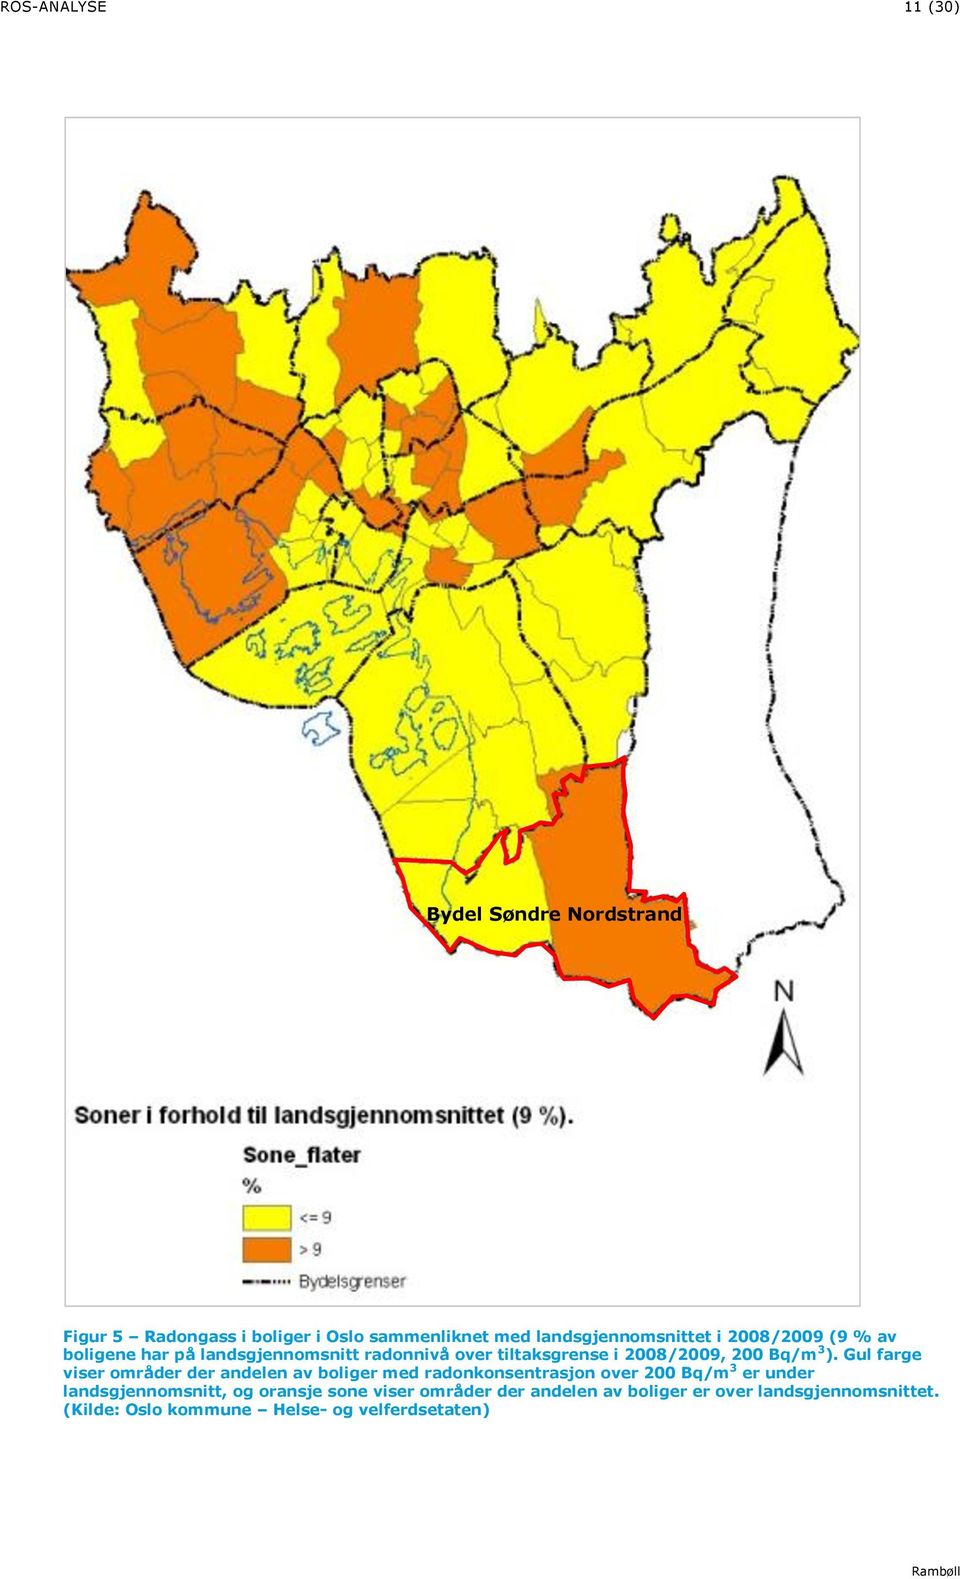 Gul farge viser områder der andelen av boliger med radonkonsentrasjon over 200 Bq/m 3 er under landsgjennomsnitt, og